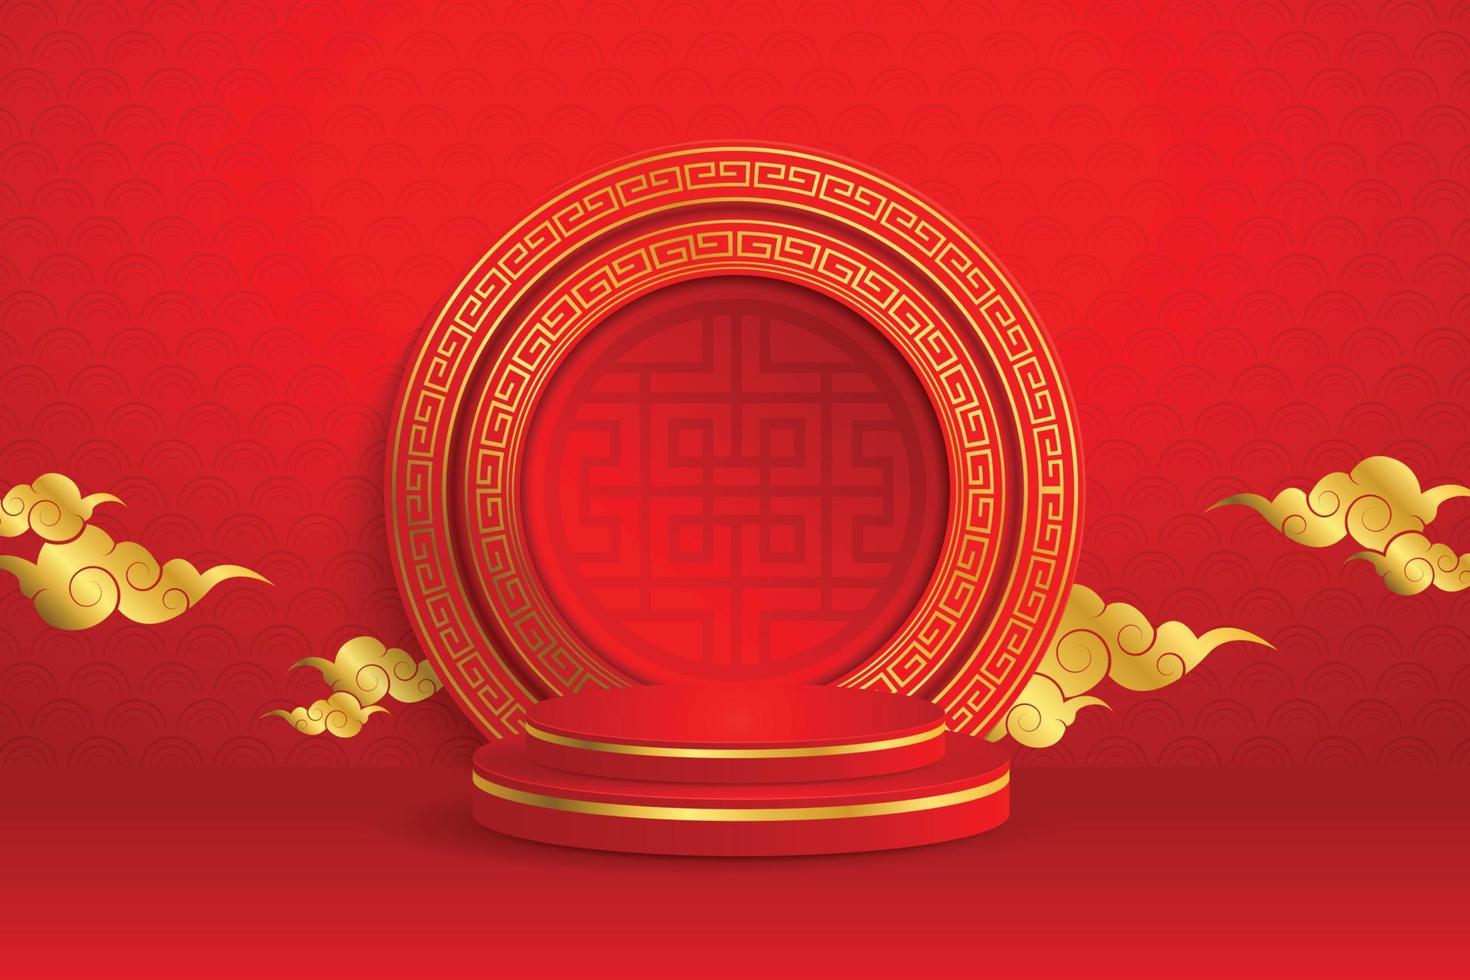 scène ronde podium, motif or chinois avec des éléments asiatiques orientaux sur fond de couleur rouge, pour carte d'invitation de mariage, bonne année, joyeux anniversaire, saint valentin, cartes de voeux, affiche. vecteur